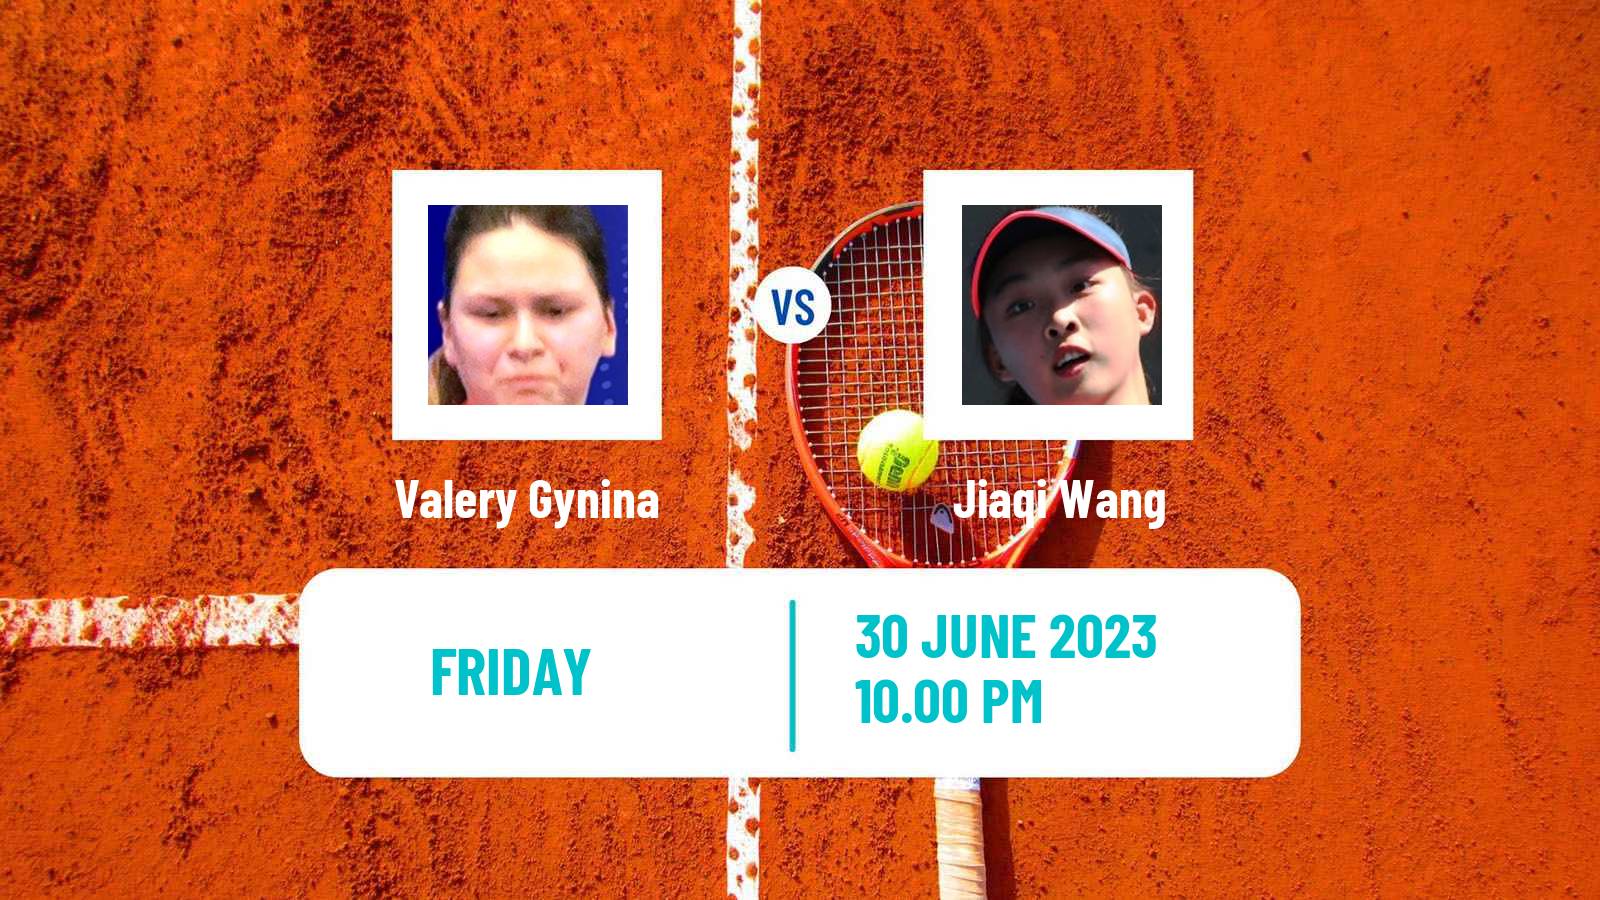 Tennis ITF W15 Tianjin 3 Women Valery Gynina - Jiaqi Wang